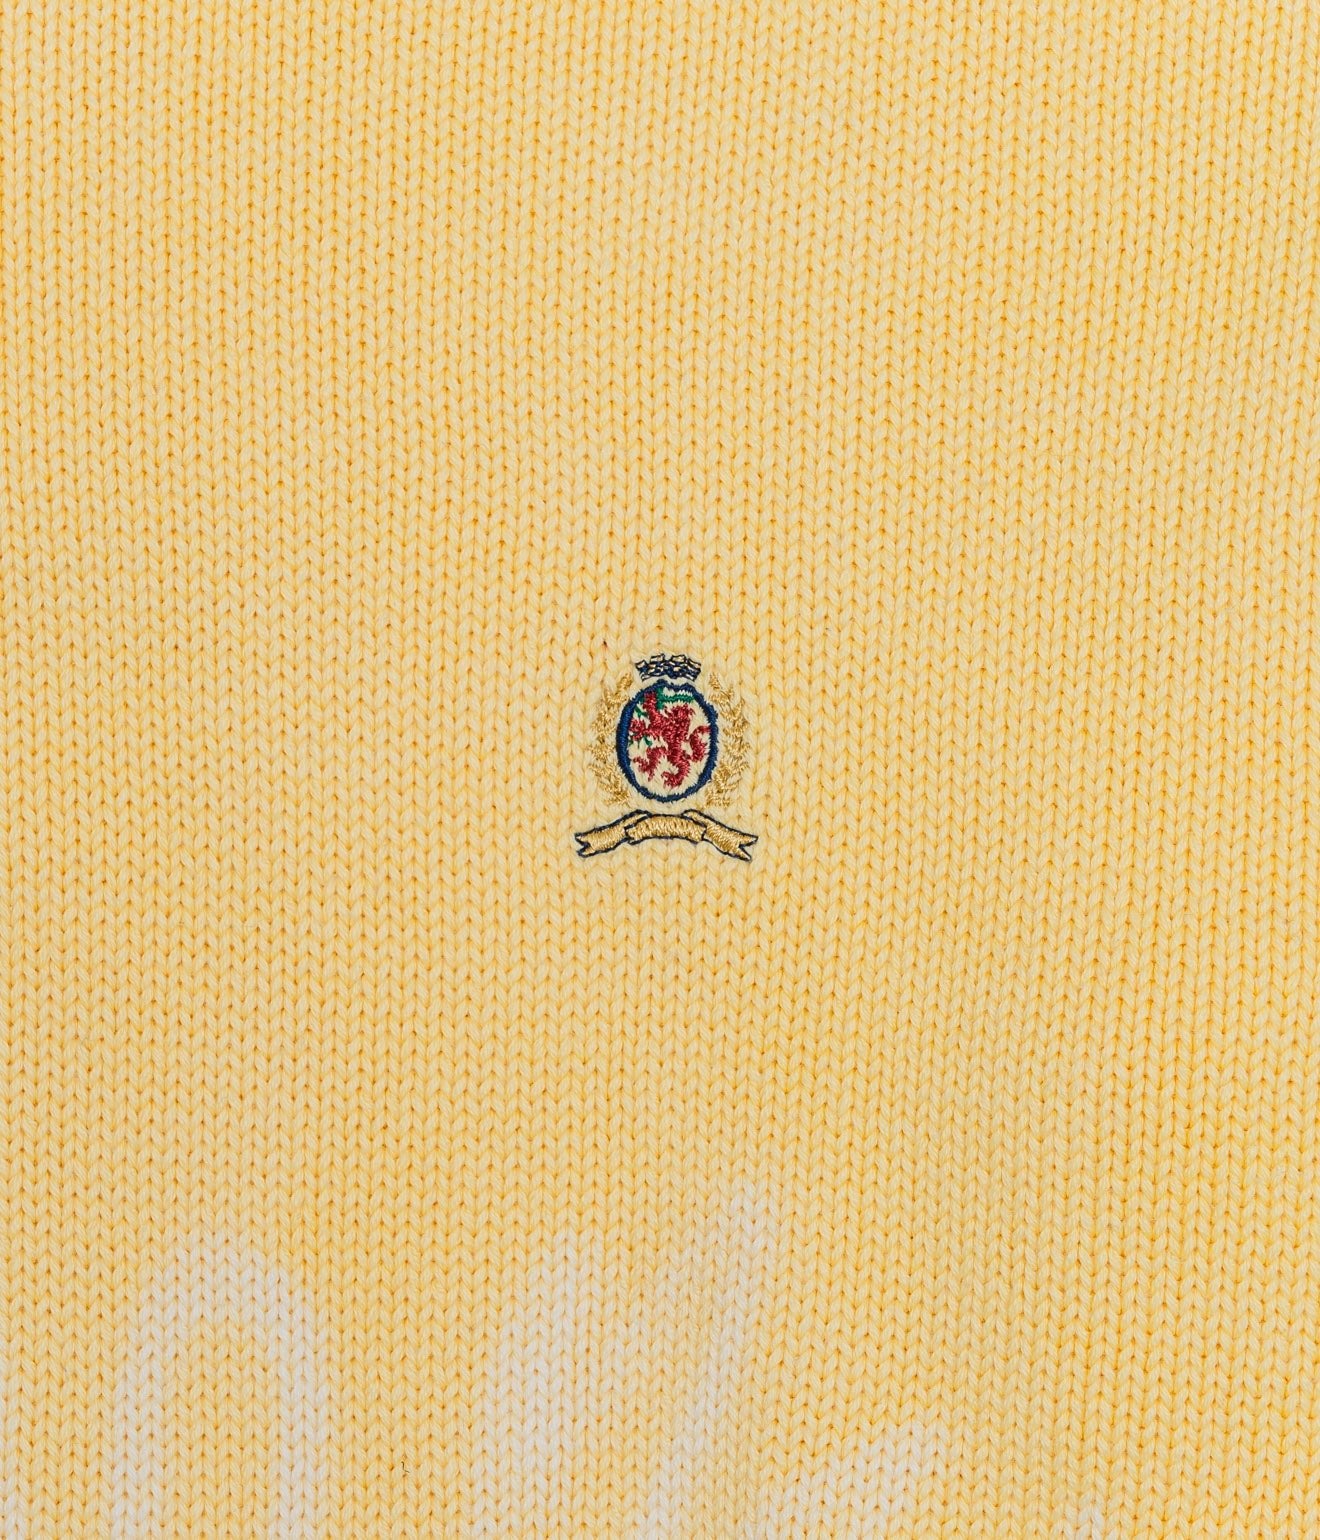 r "Tie-dye cotton sweater fire pattern" Yellow 2 - WEAREALLANIMALS